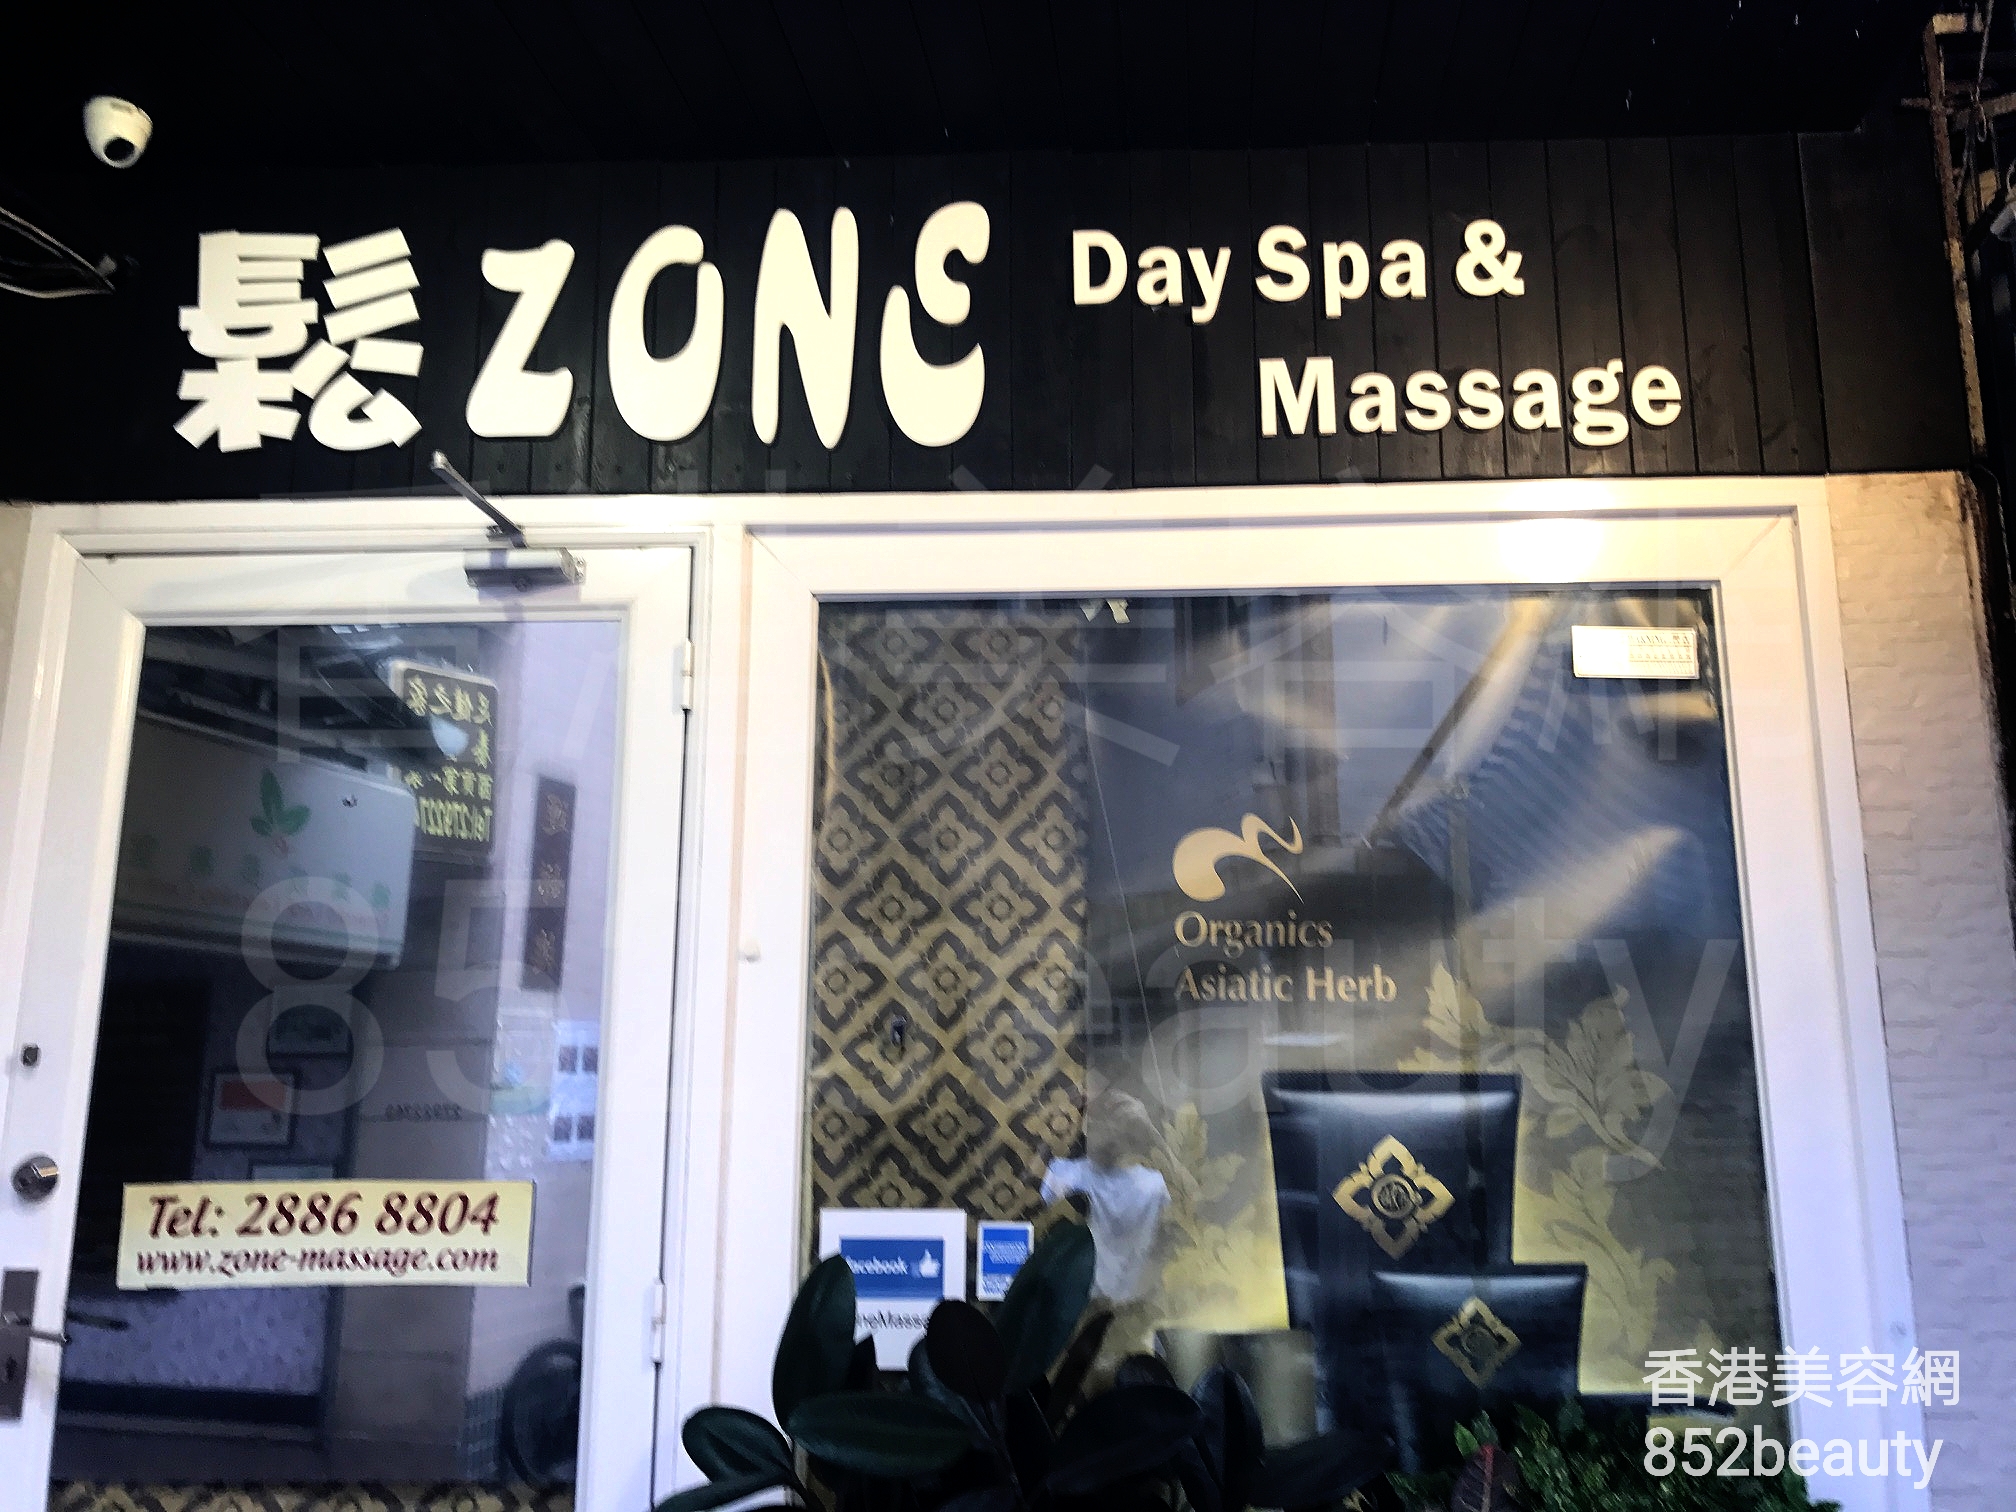 美容院: 鬆Zone Day Spa & Massage